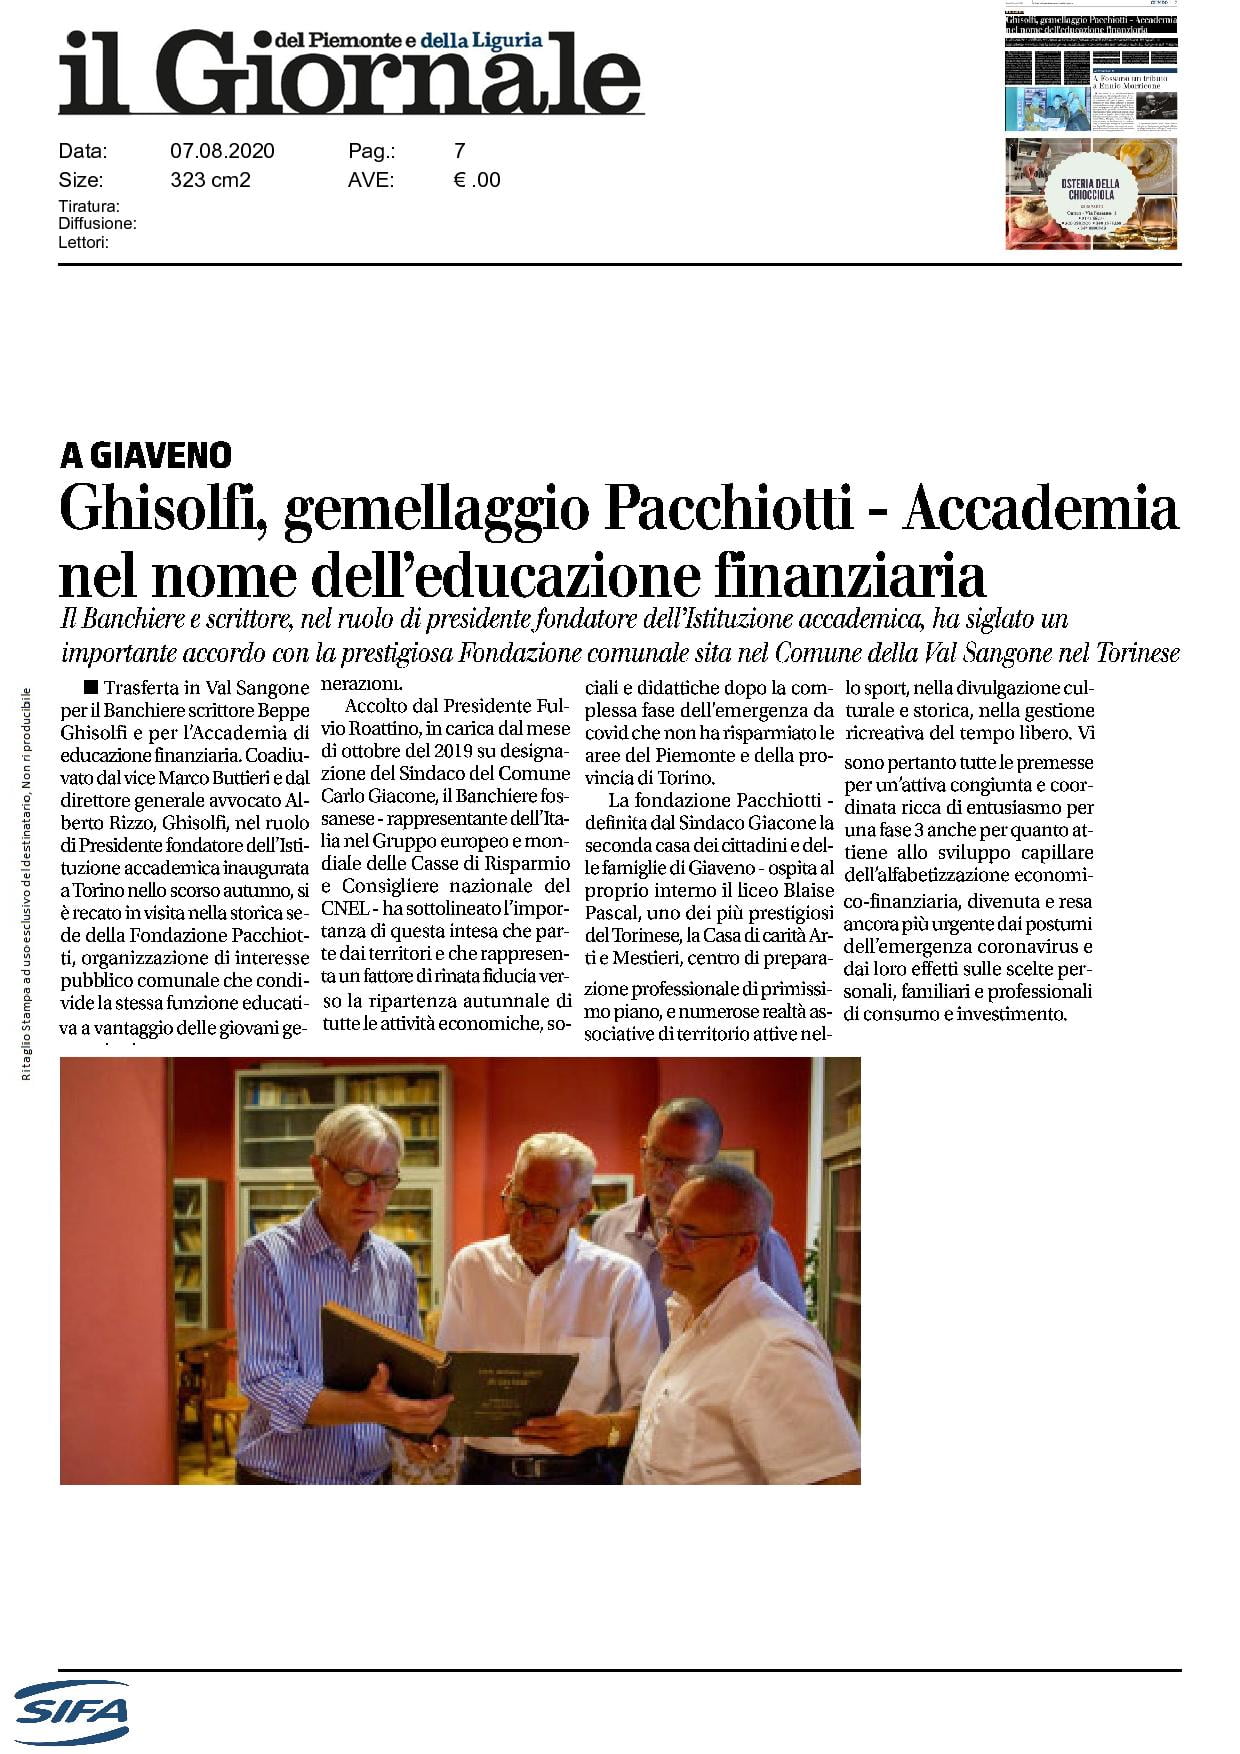 Ghisolfi, gemellaggio Pacchiotti - Accademia nel nome dell'educazione finanziaria